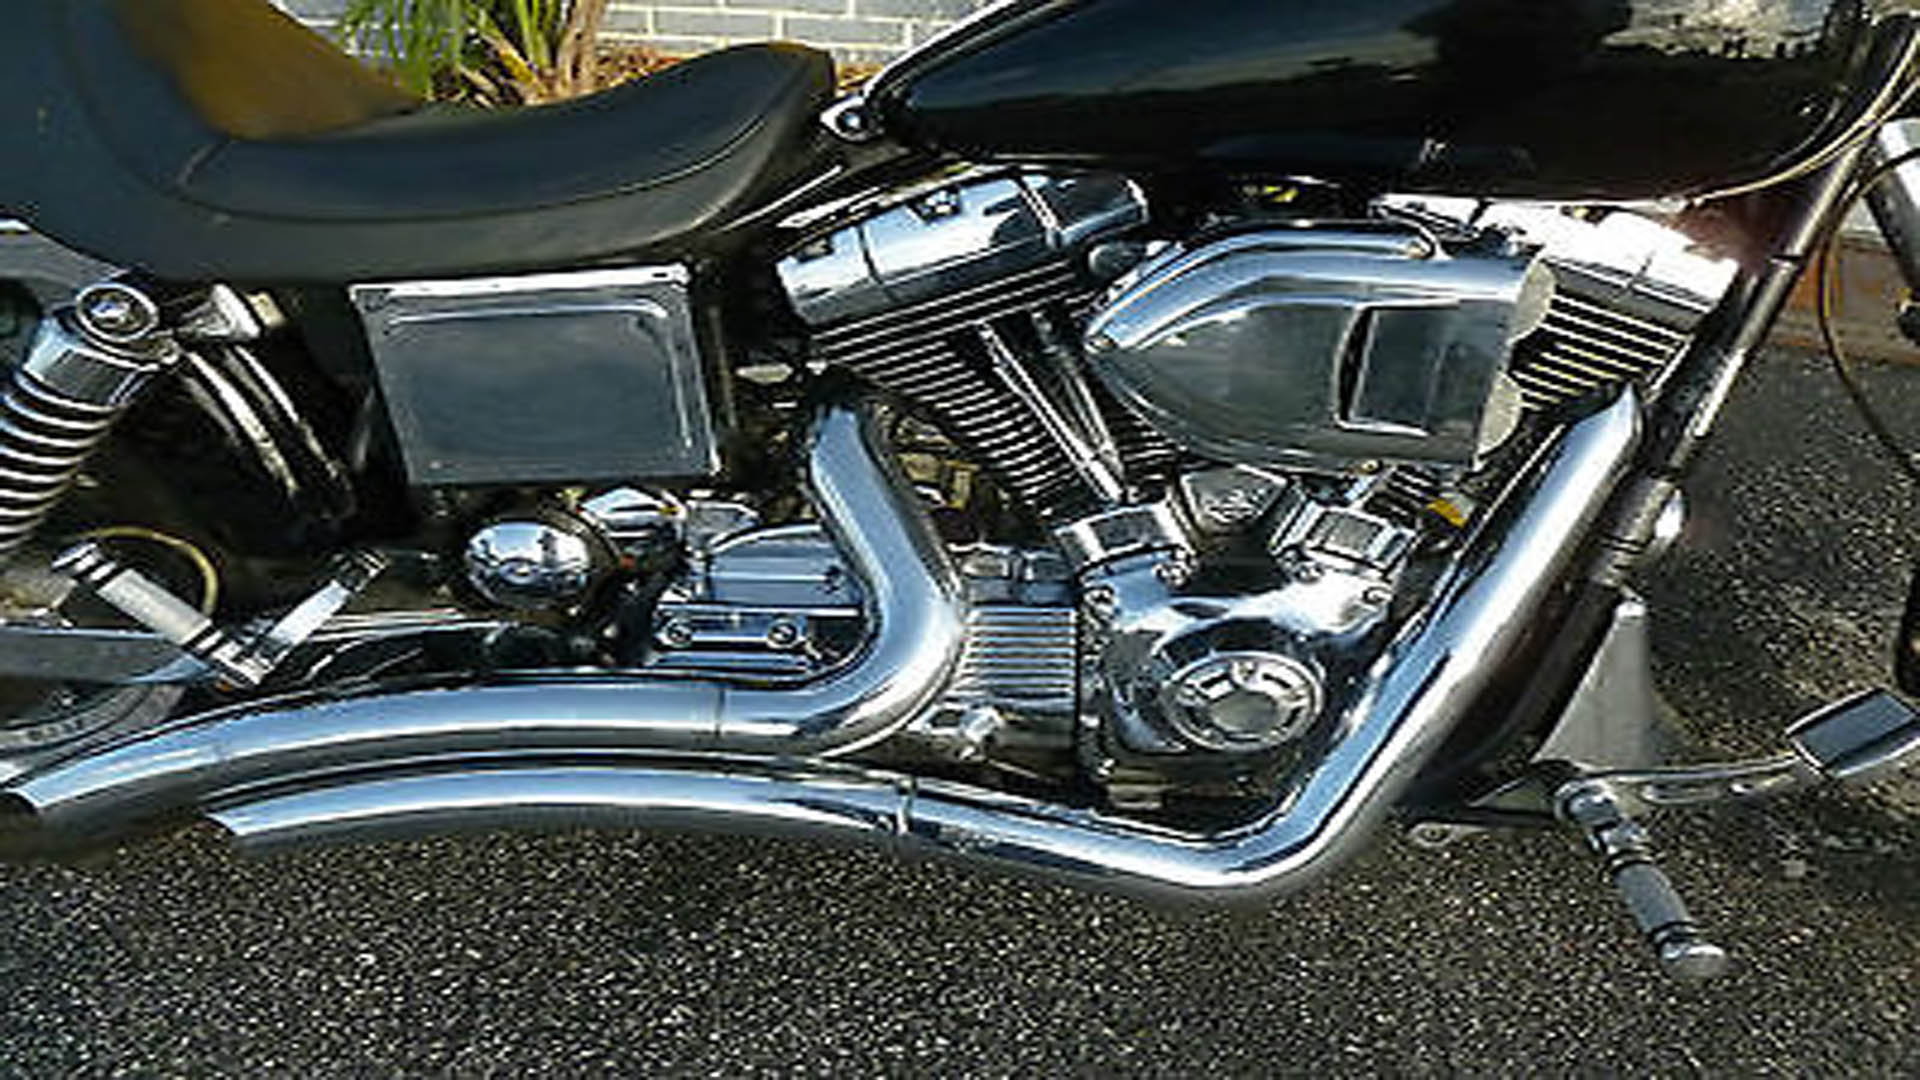 Harley Davidson Dyna Glide Engine Performance Diagnostic Guide Hdforums